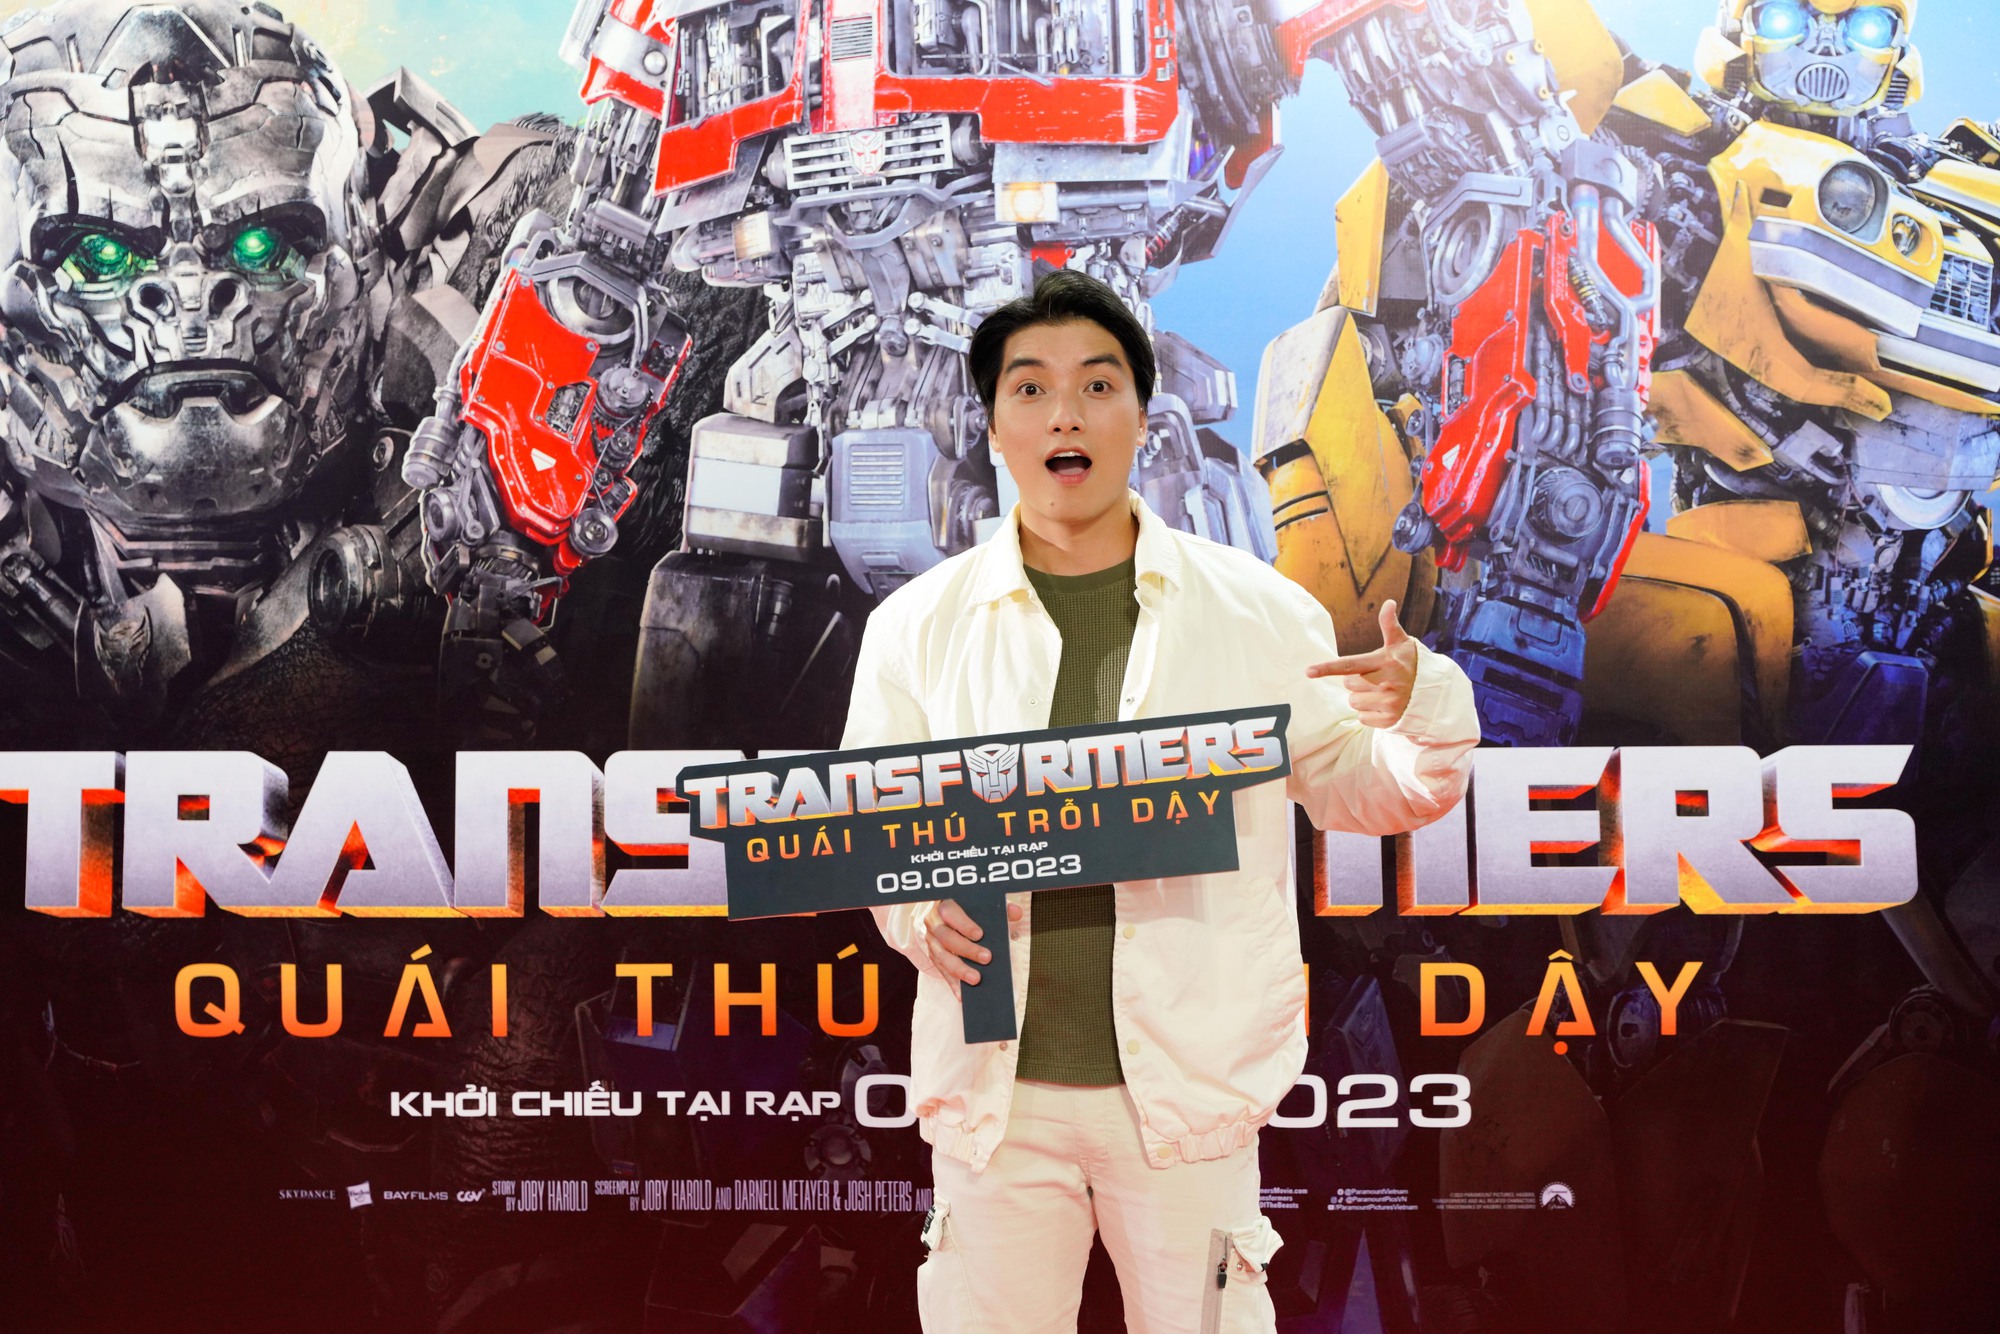 Sao Việt tụ hội buổi ra mắt phần mới bom tấn “Transformers” - Ảnh 6.